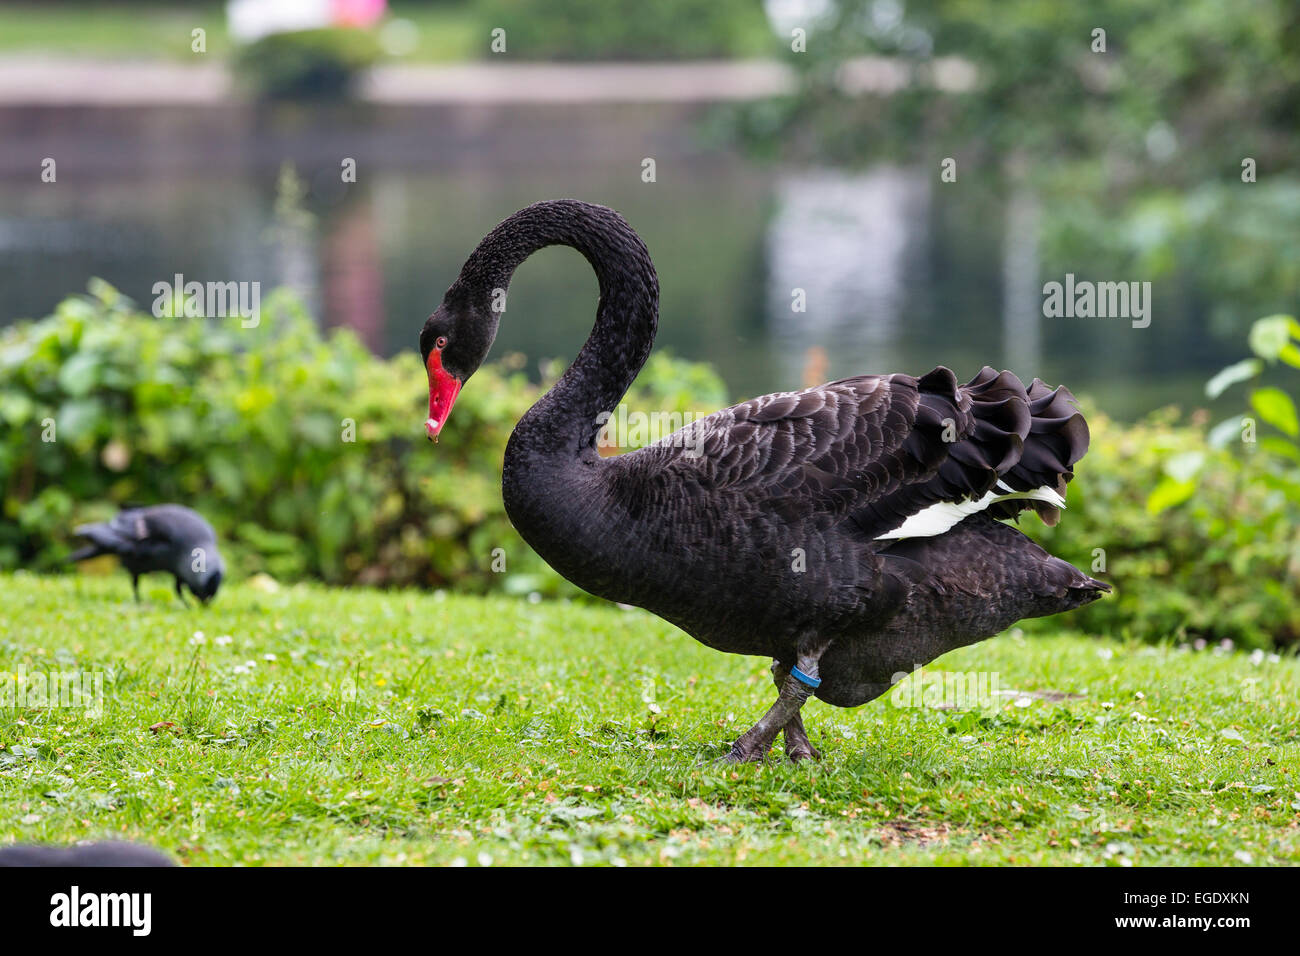 Black Swan nei giardini del centro termale, Cygnus atratus, Norderney Isola, Nationalpark, Mare del Nord est delle Isole Frisone, Frisia orientale, Bassa Sassonia, Germania, Europa Foto Stock